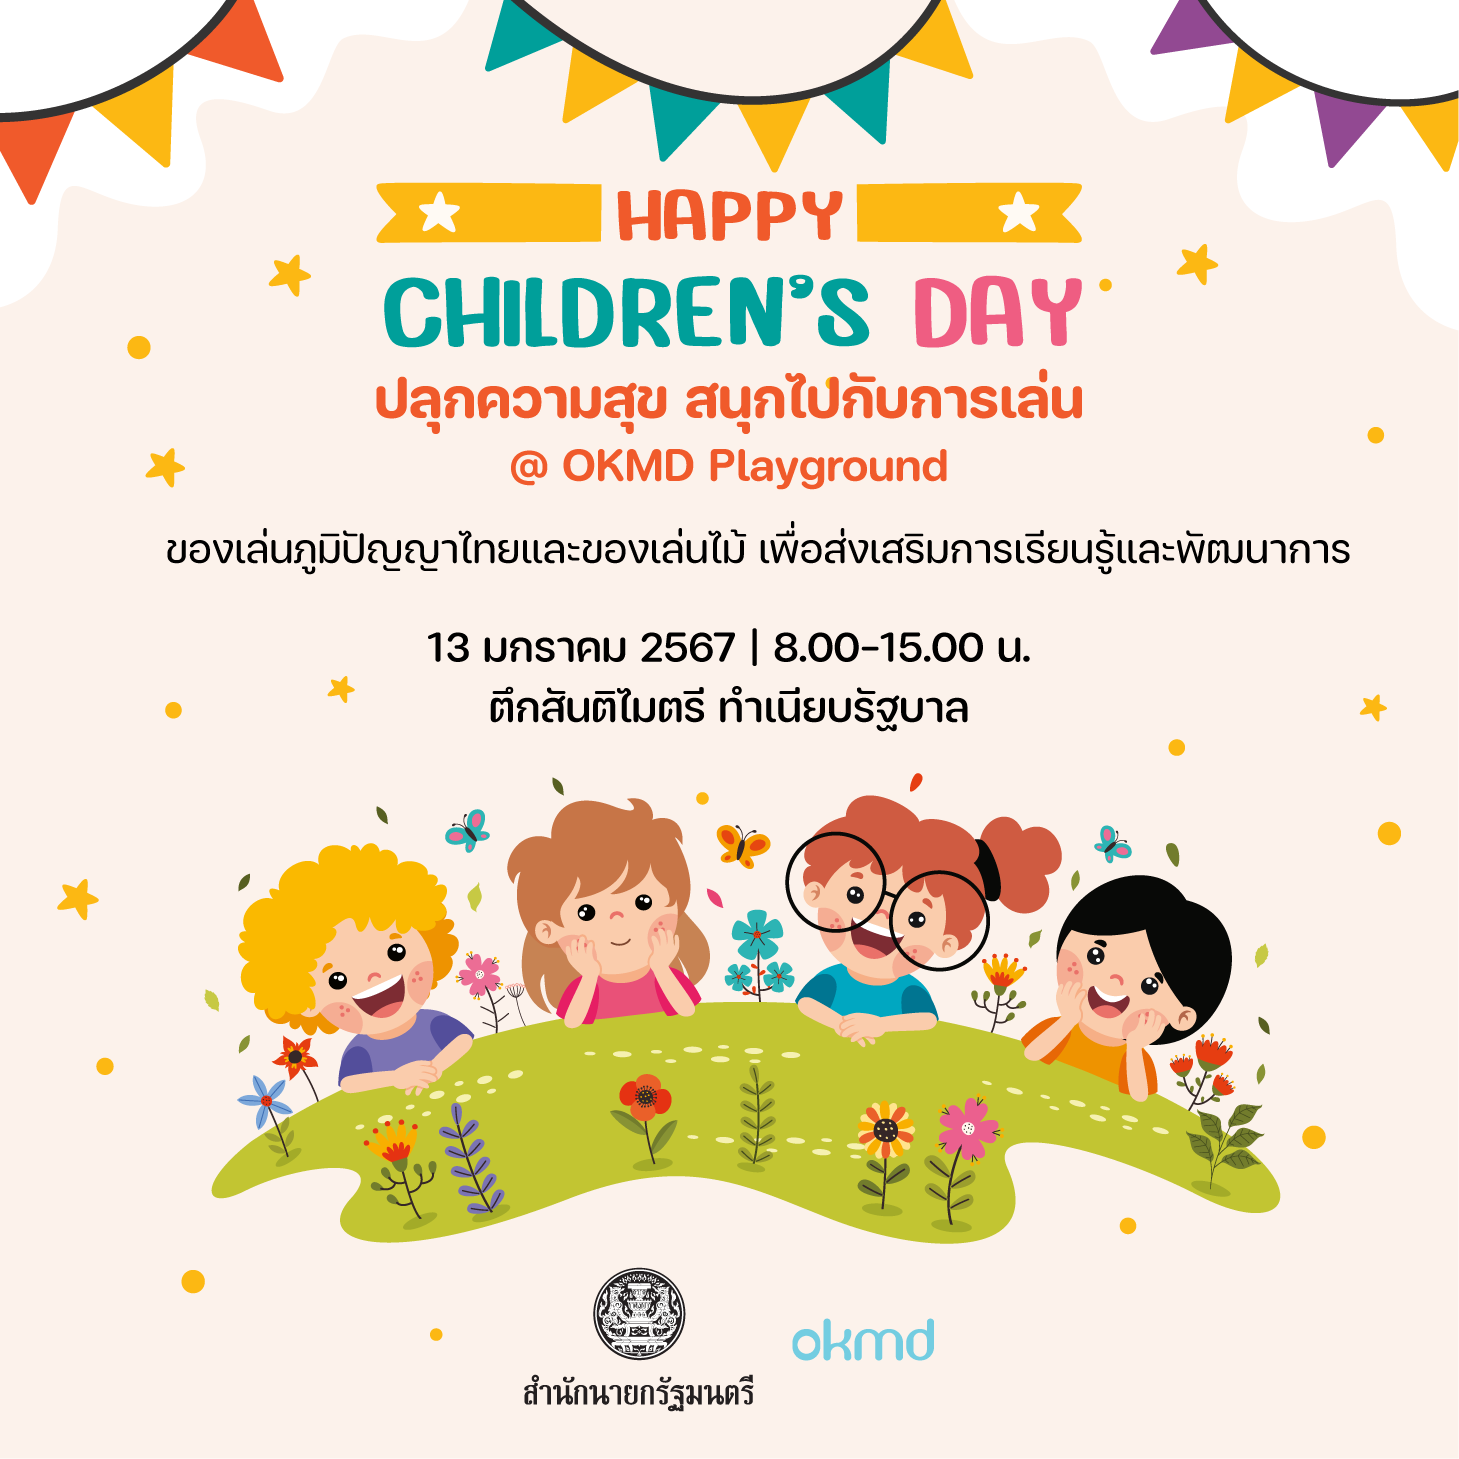 วันเด็กแห่งชาติปี 2567 | Happy Children’s Day ปลุกความสุข สนุกไปกับการเล่น @OKMD Playground